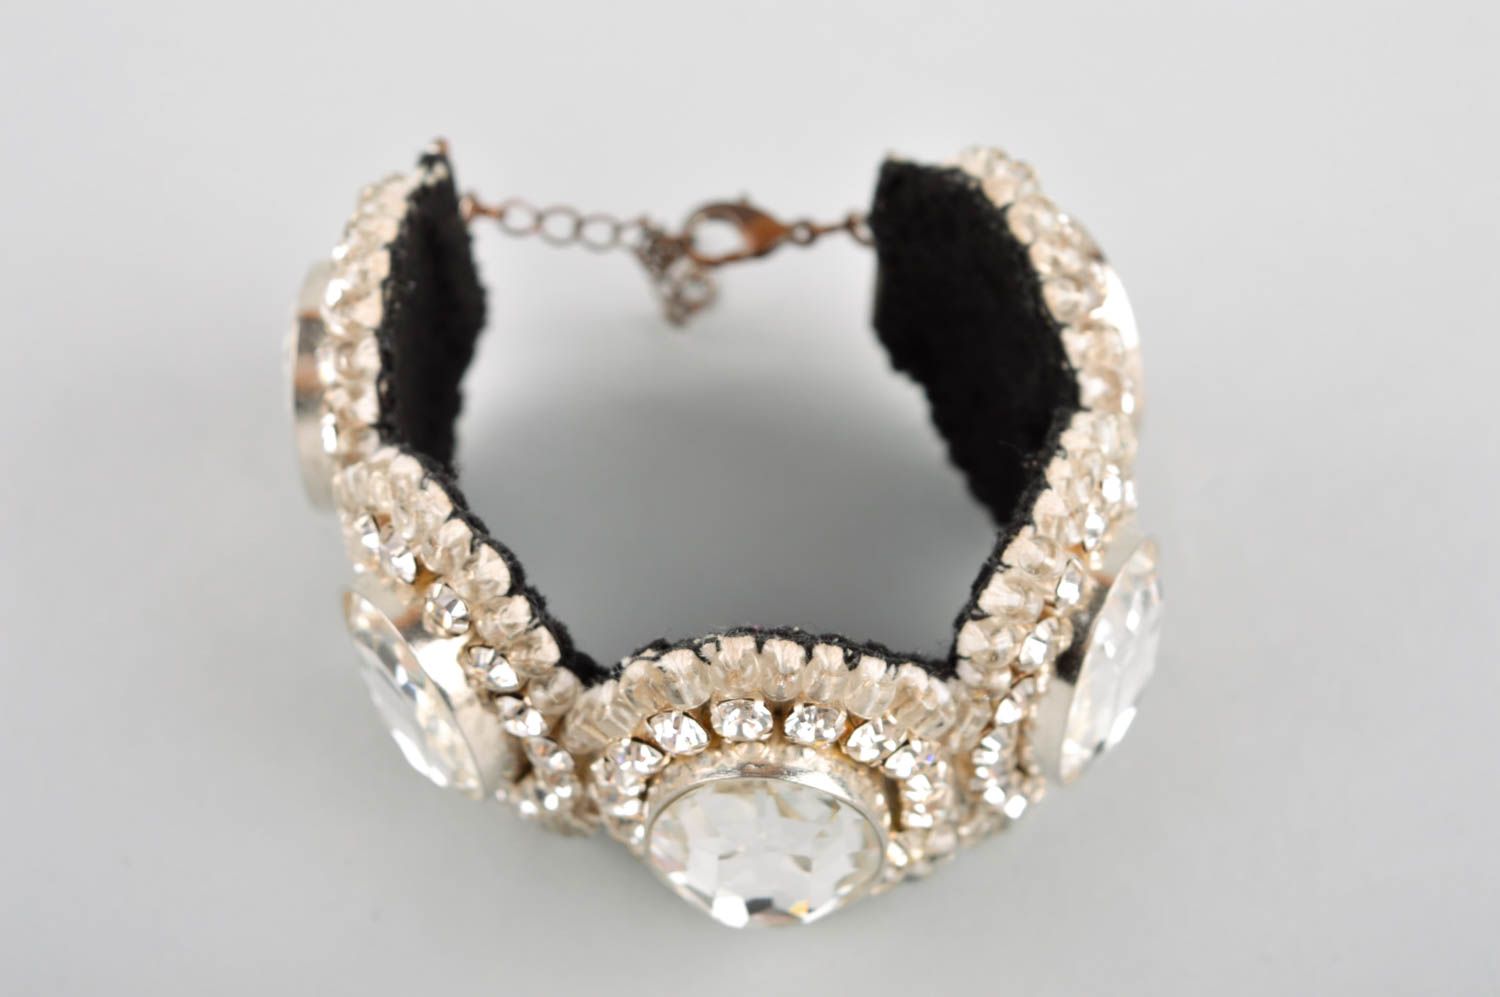 White wrist bracelet handmade crystal bijouterie designer accessory for women photo 2